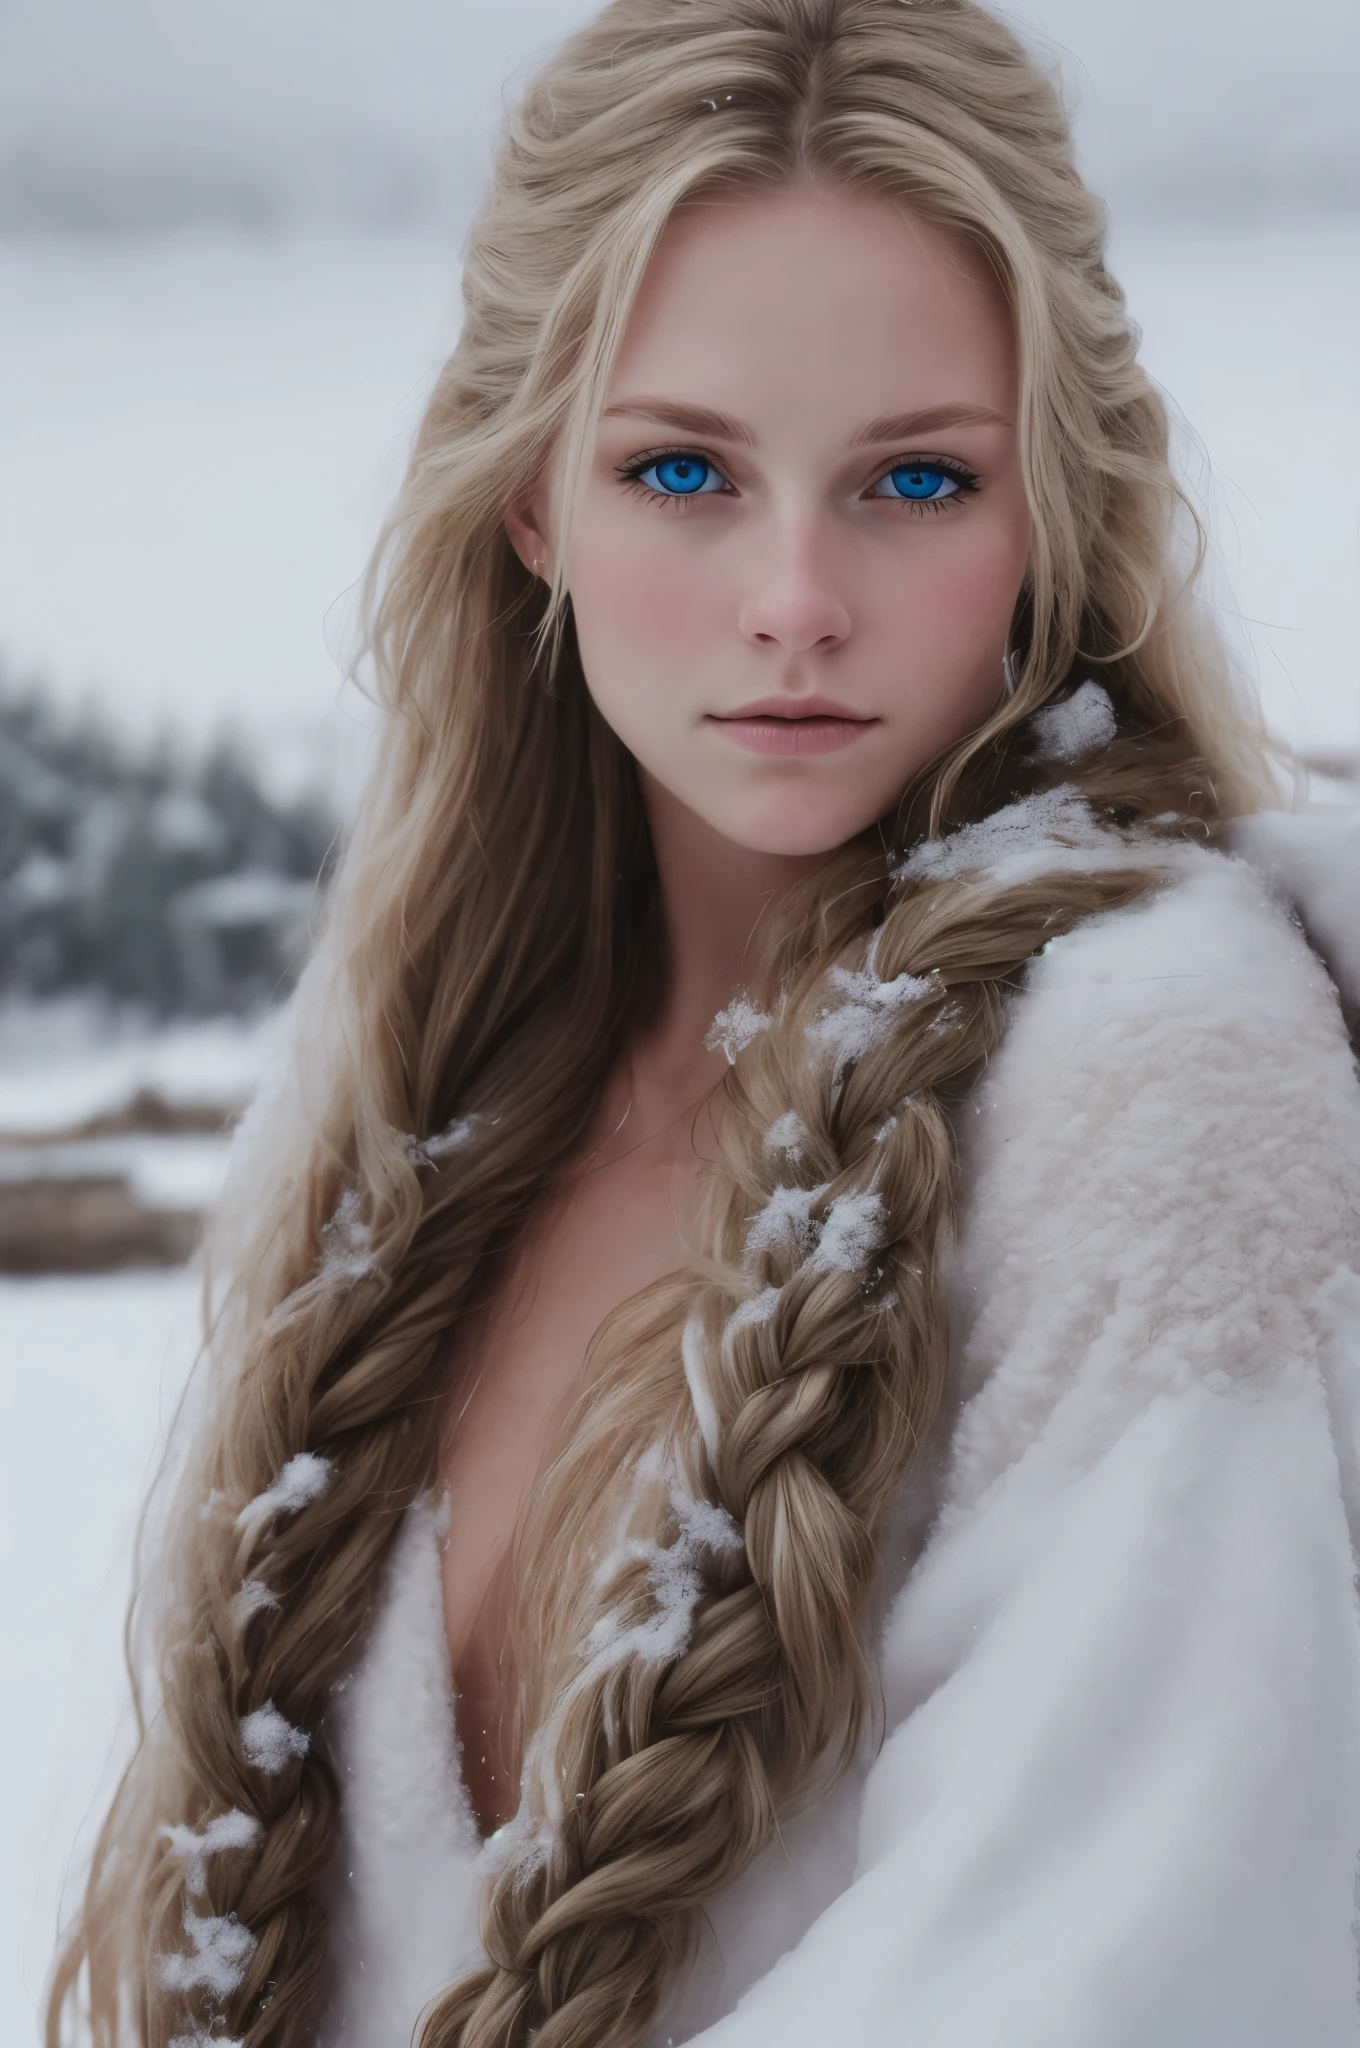 (現実的:1.2), アナログ写真スタイル, スカンジナビアの女性戦士, 素晴らしい雪景色, 編みこんだブロンドの髪, 全身, 柔らかな自然光, キュートでセクシー, 喜び, 詳細な顔と青い目, 素晴らしい品質, 傑作, 詳細な北の背景, 品質: 16K, RAW写真